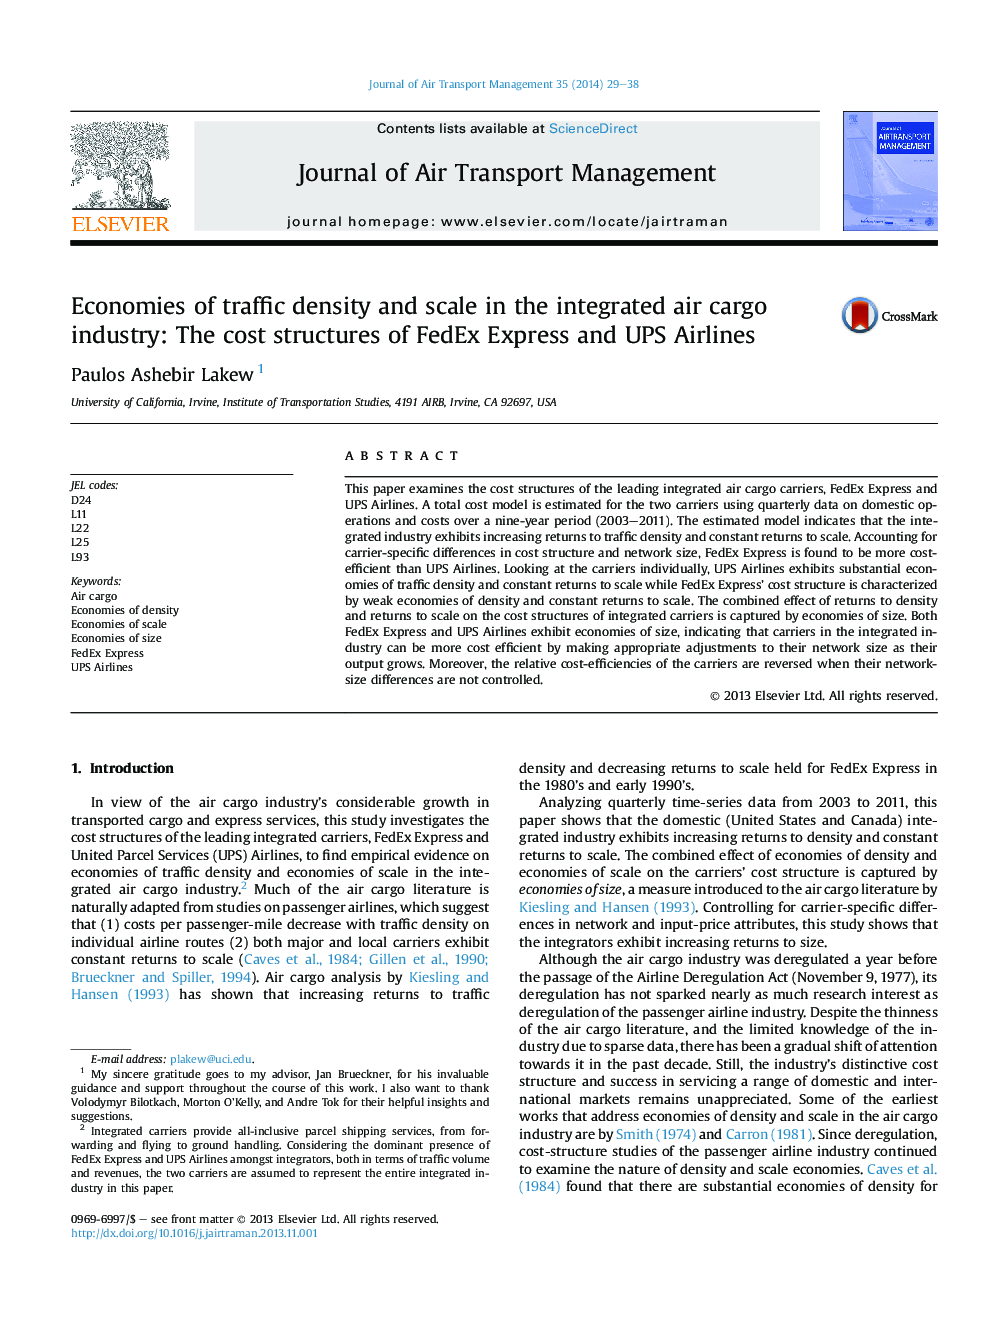 اقتصاد چگالی ترافیک و مقیاس در صنعت حمل و نقل یکپارچه هوا: ساختار هزینه های خطوط هوایی فدرال اکسپرس و یو پی اس 